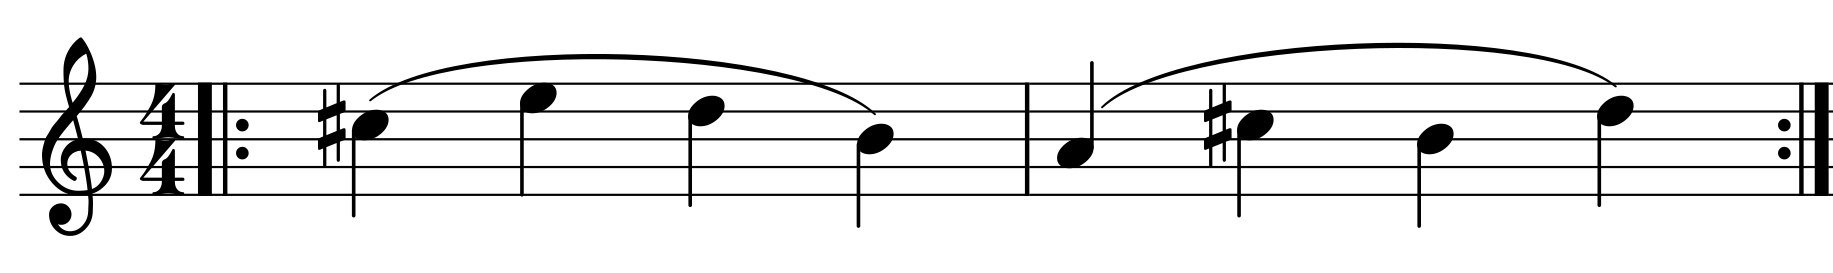 Abbildung 3: Ein Notenbeispiel, mit dem man die Handstellung optimieren kann. Folgende Tonfolge soll mehrmals auf der A-Saite hintereinander gespielt werden: cis-e-d-h-a-cis-h-d.